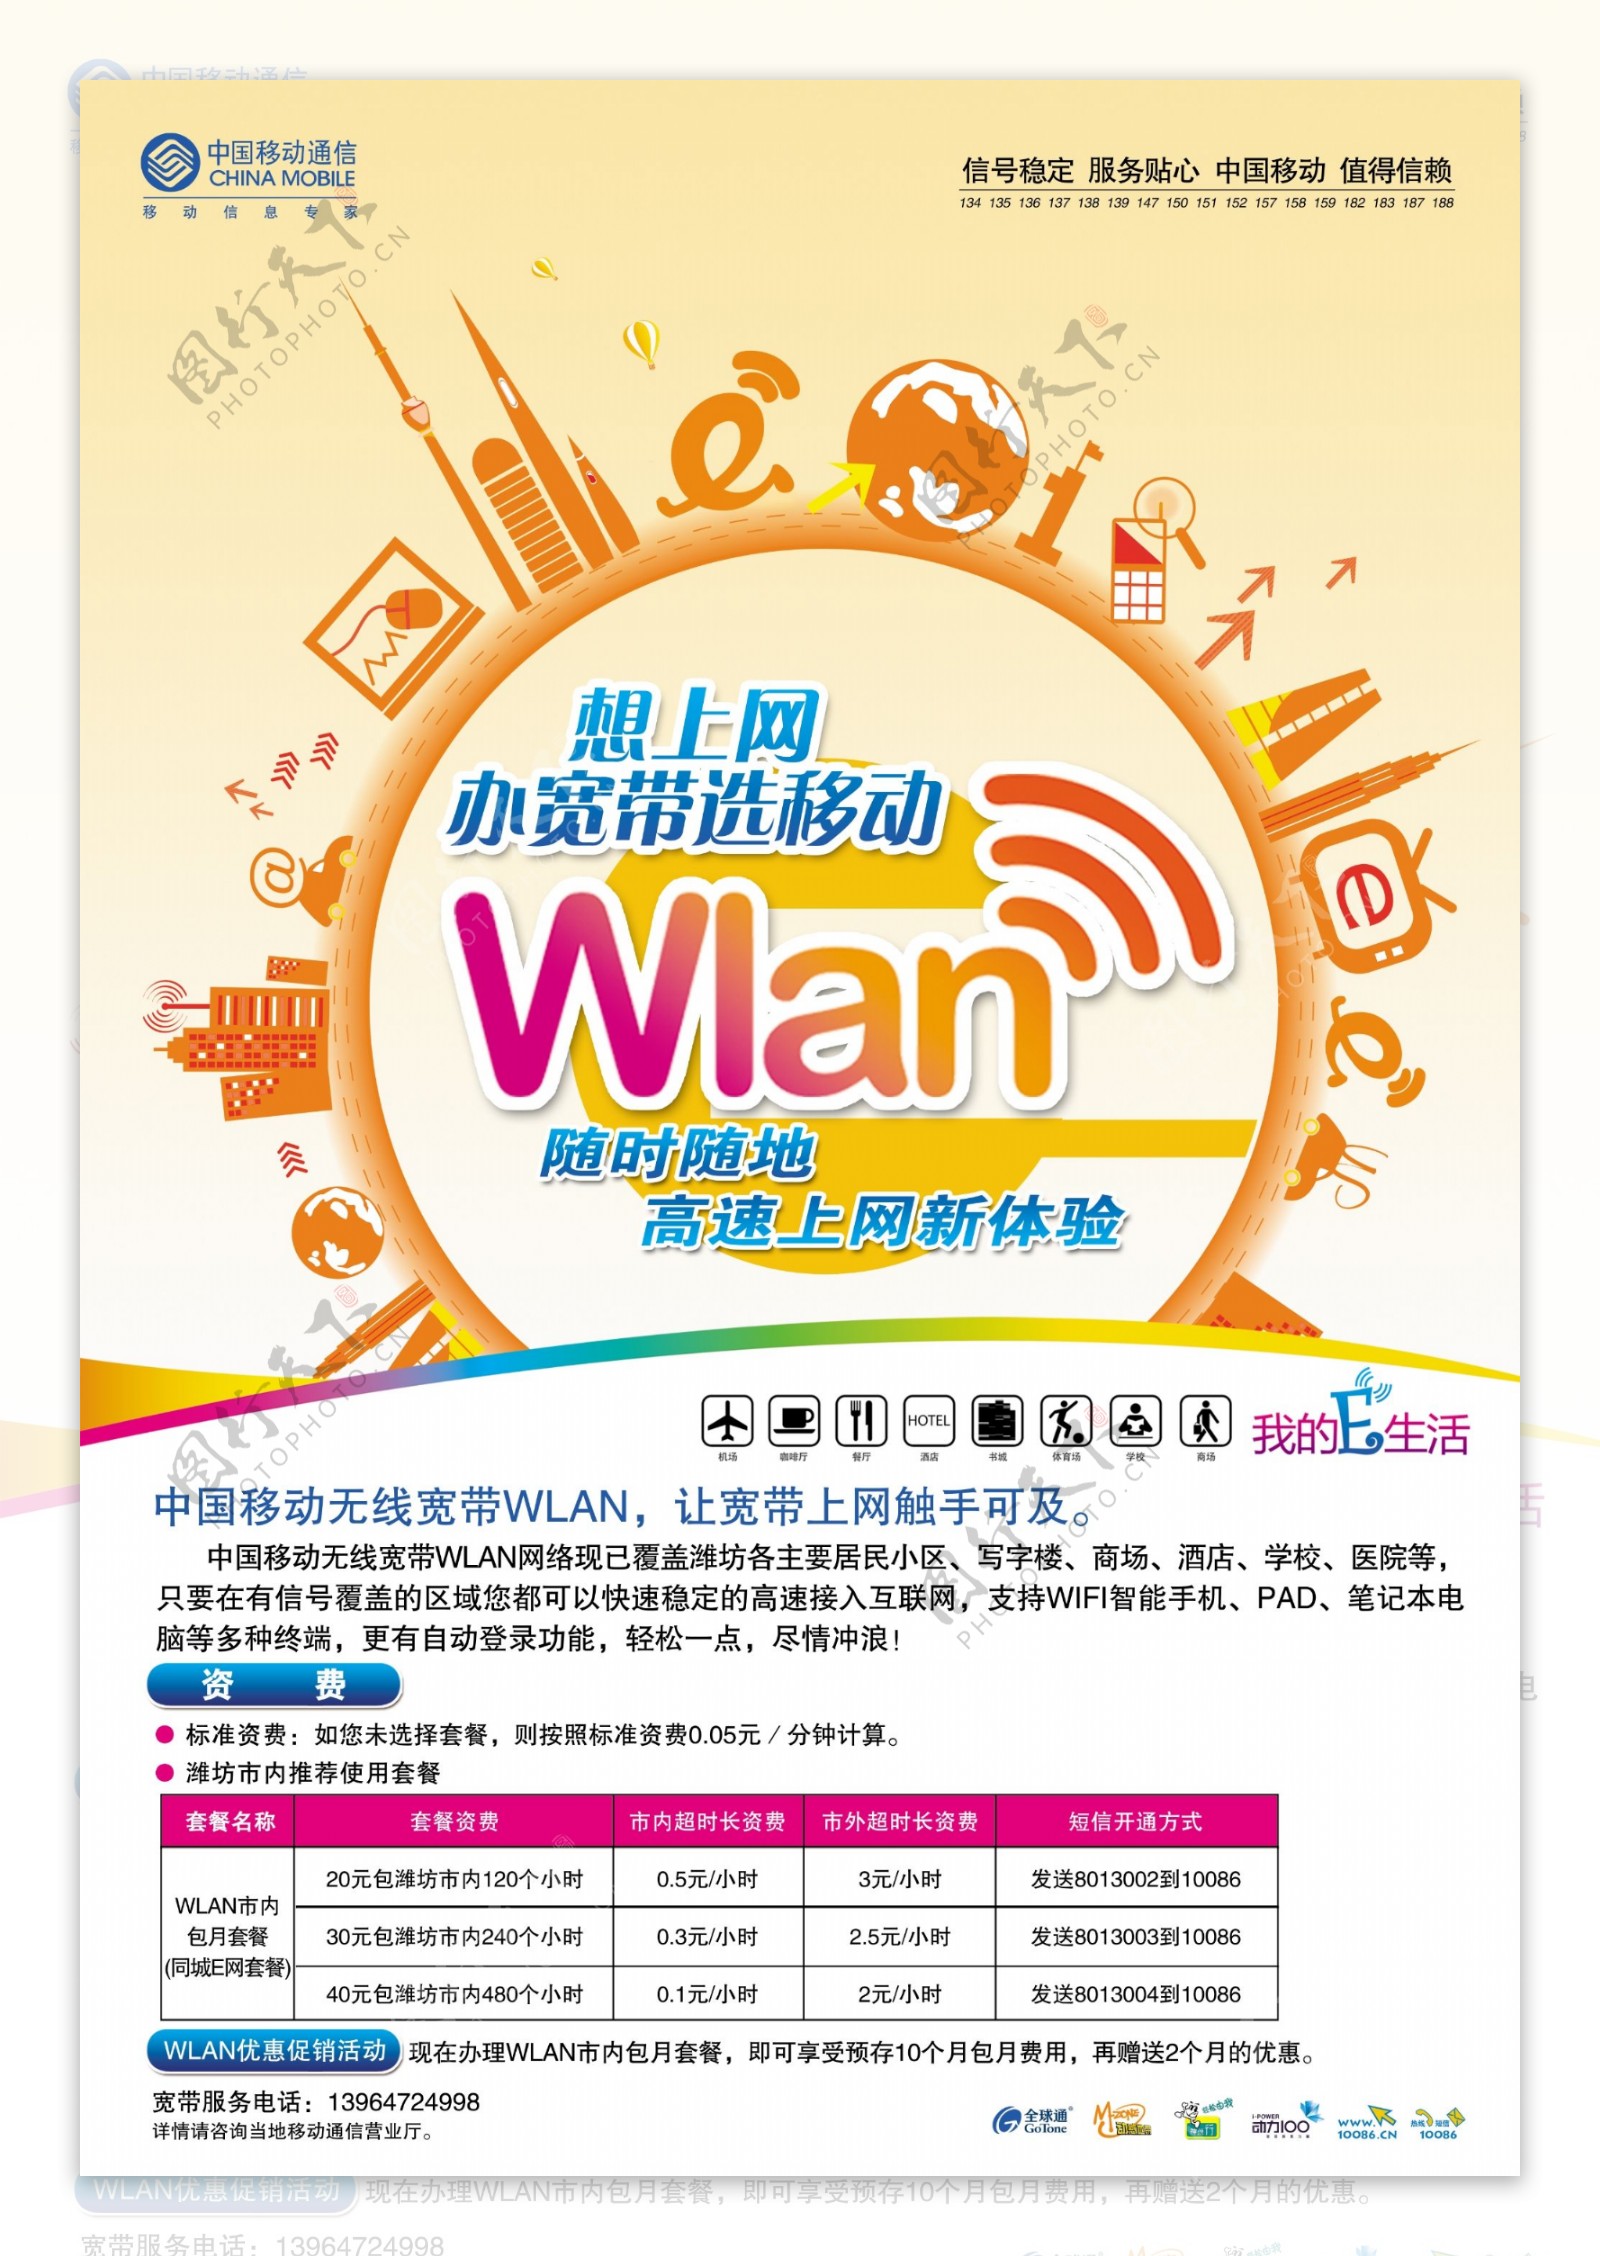 移动通信Wlan网络广告PSD素材